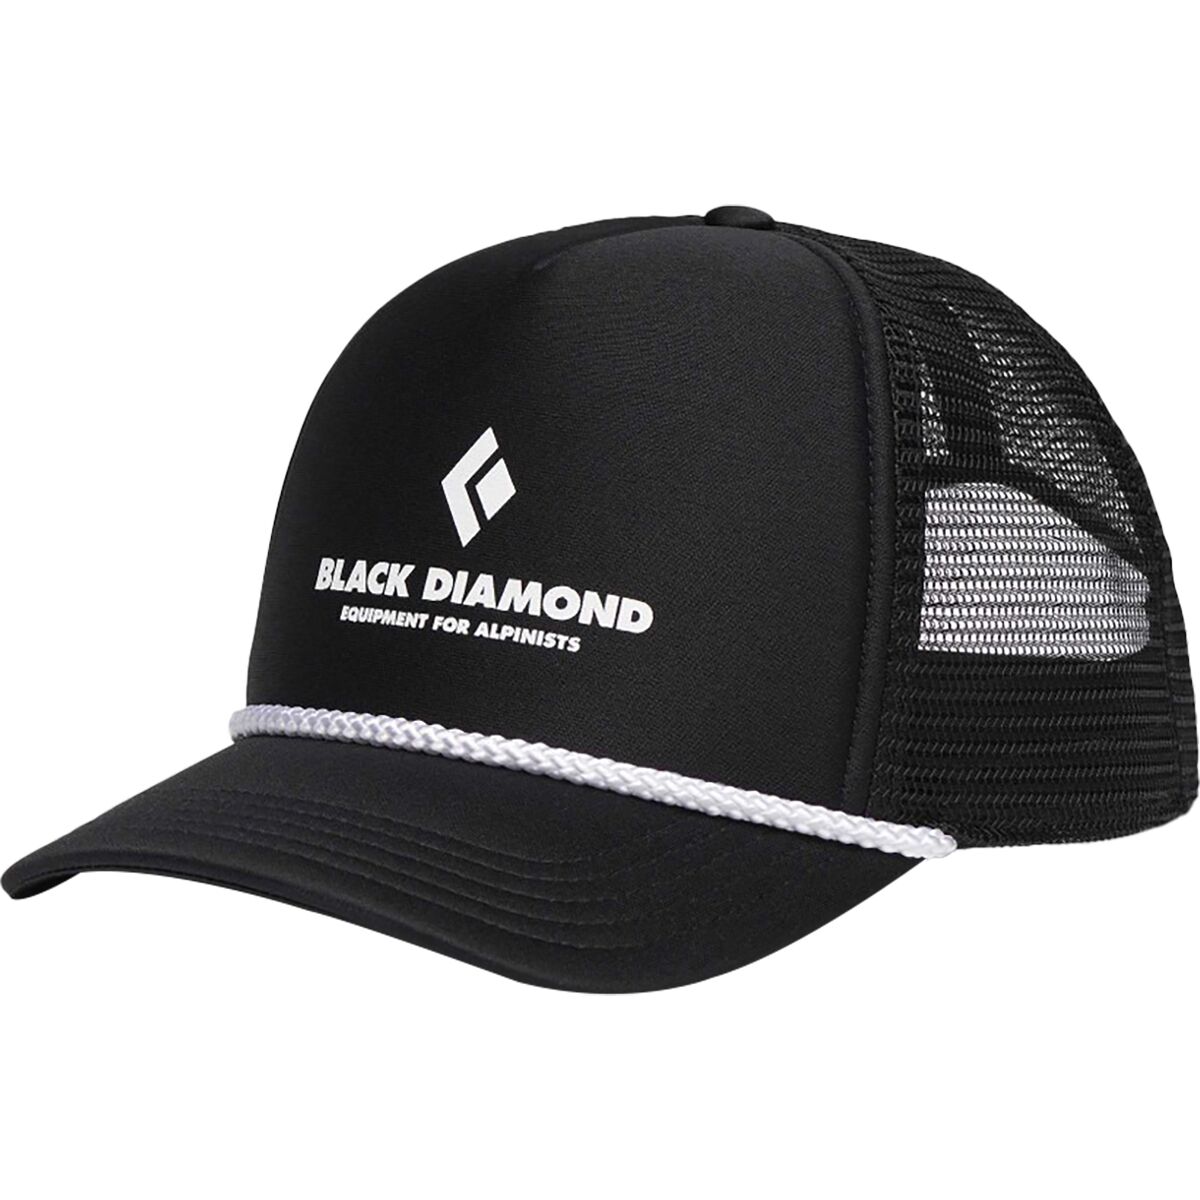 Кепка дальнобойщика с плоским козырьком Black Diamond, цвет black/black eqpmnt for alpnst